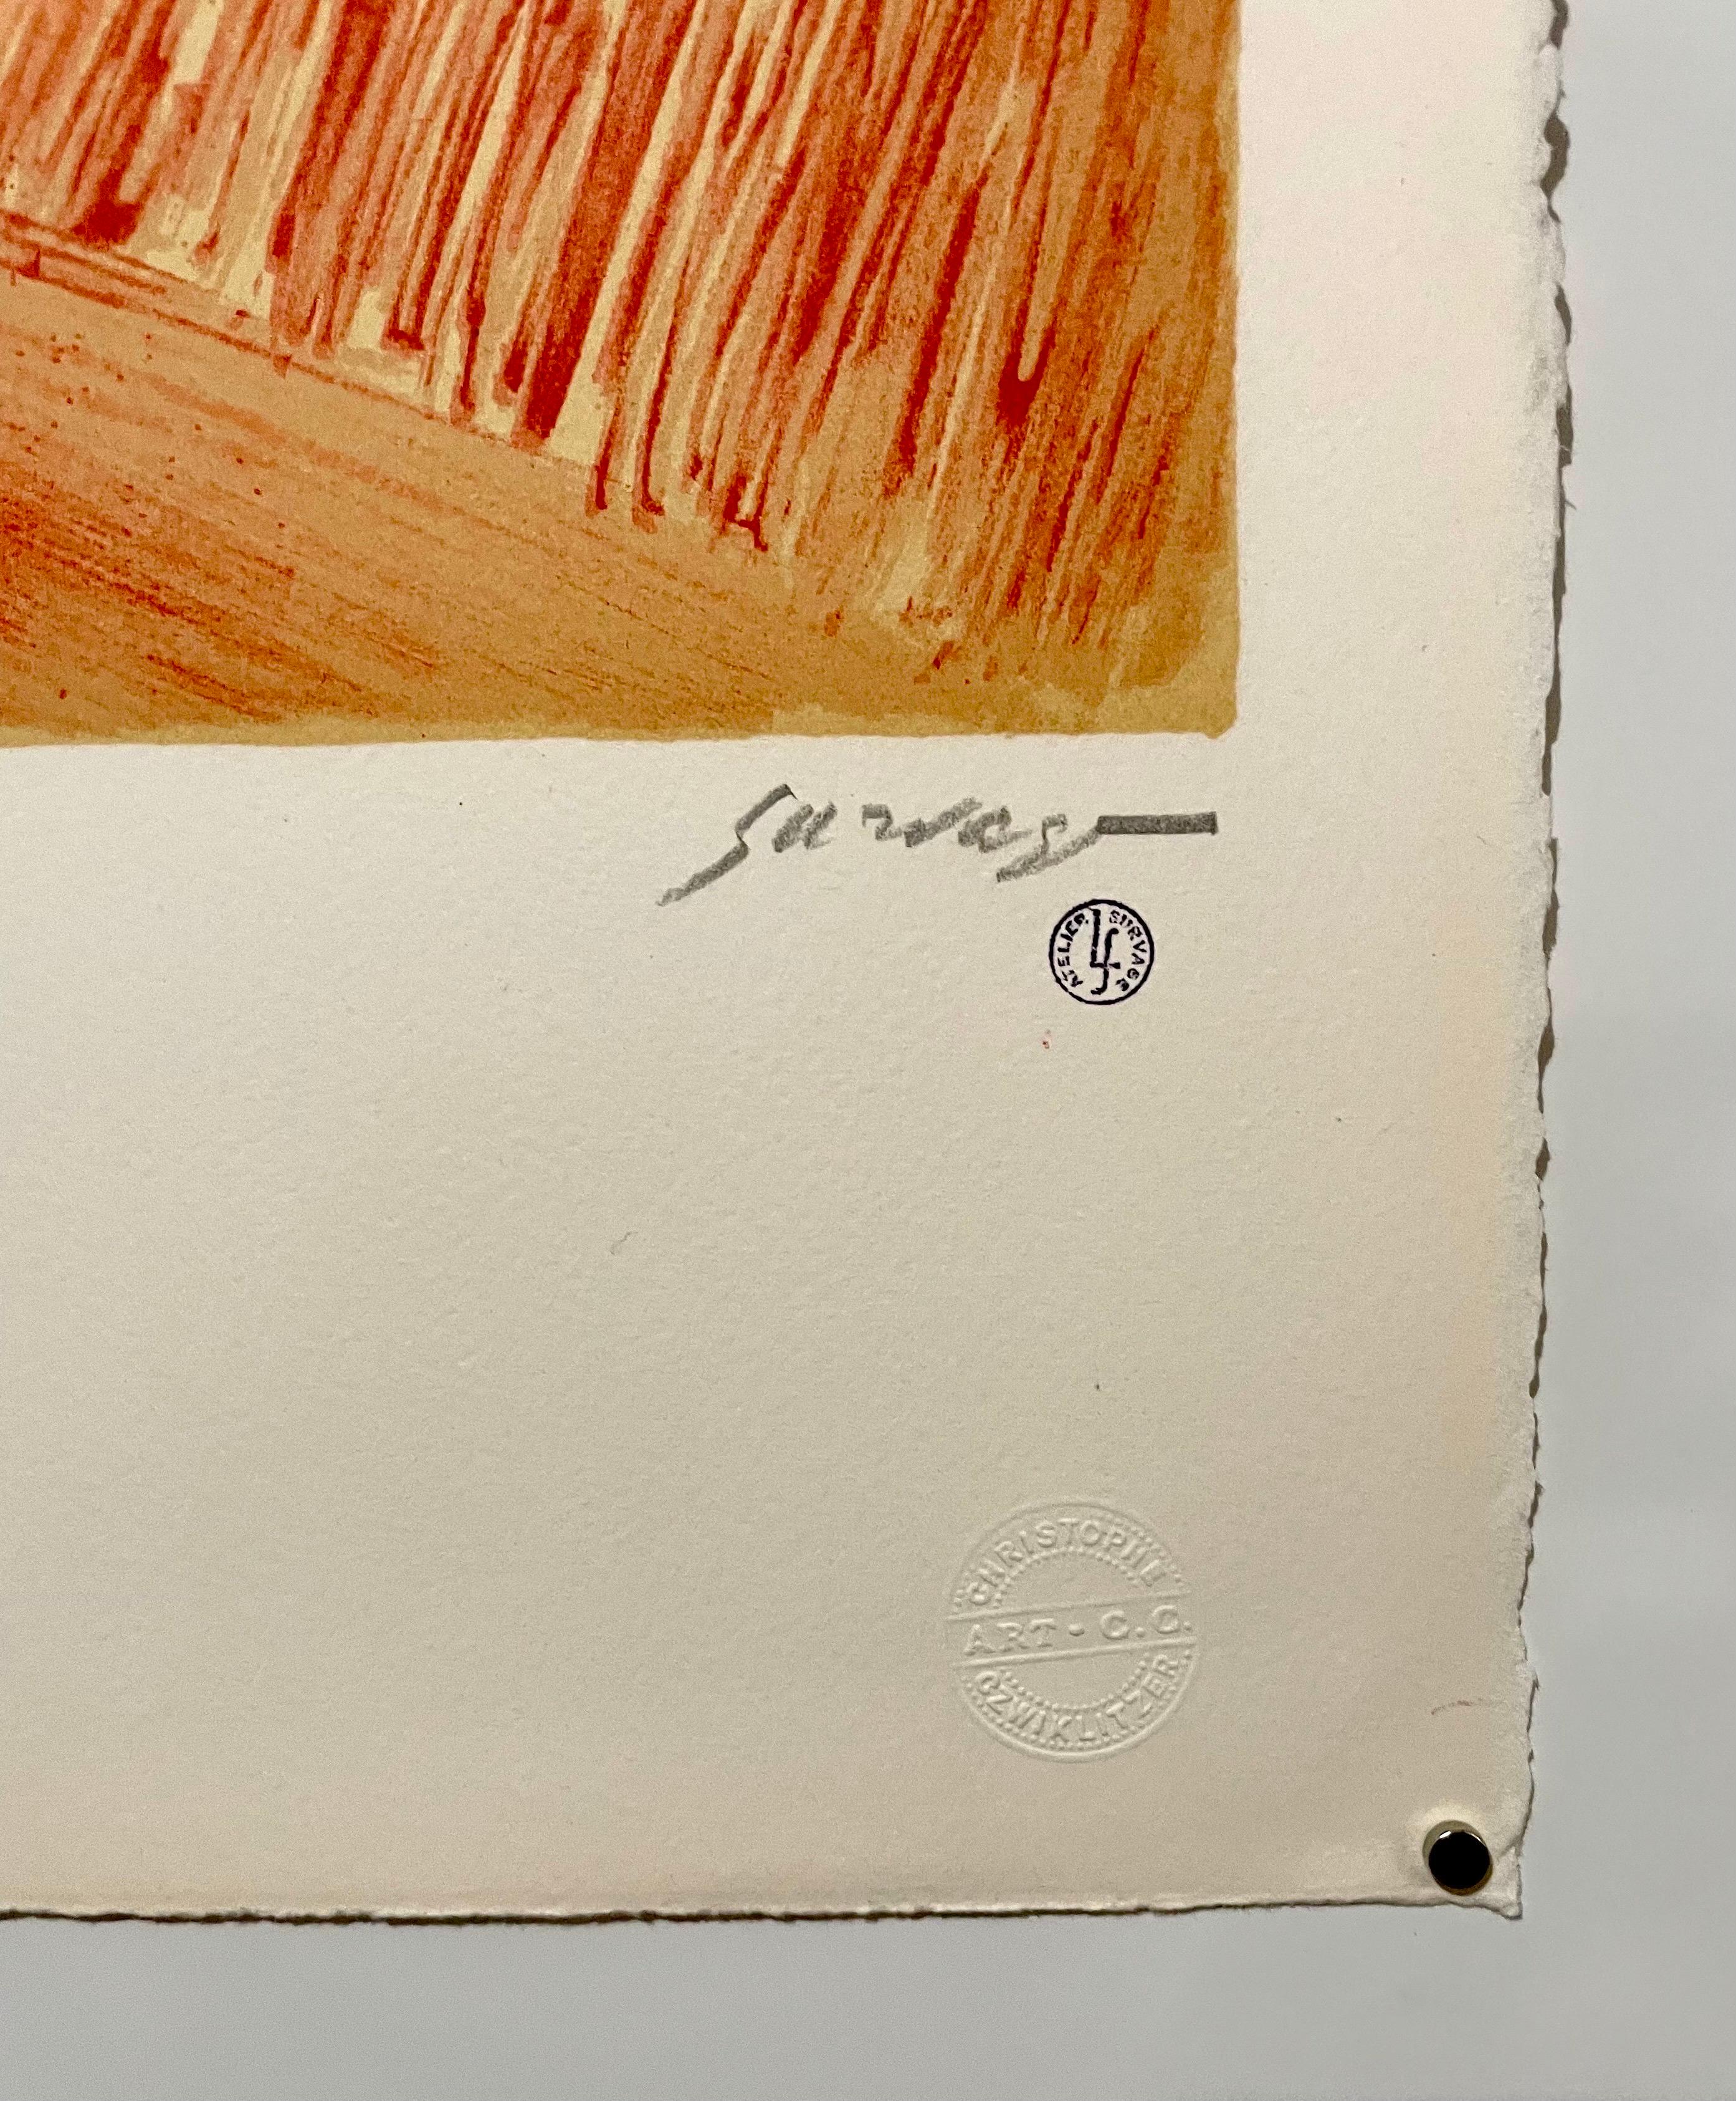 Russische, französische Avantgarde-Lithographie, Rhythmus in farbenfrohem, lebhaftem, abstraktem Druck (Kubismus), Print, von Léopold Survage